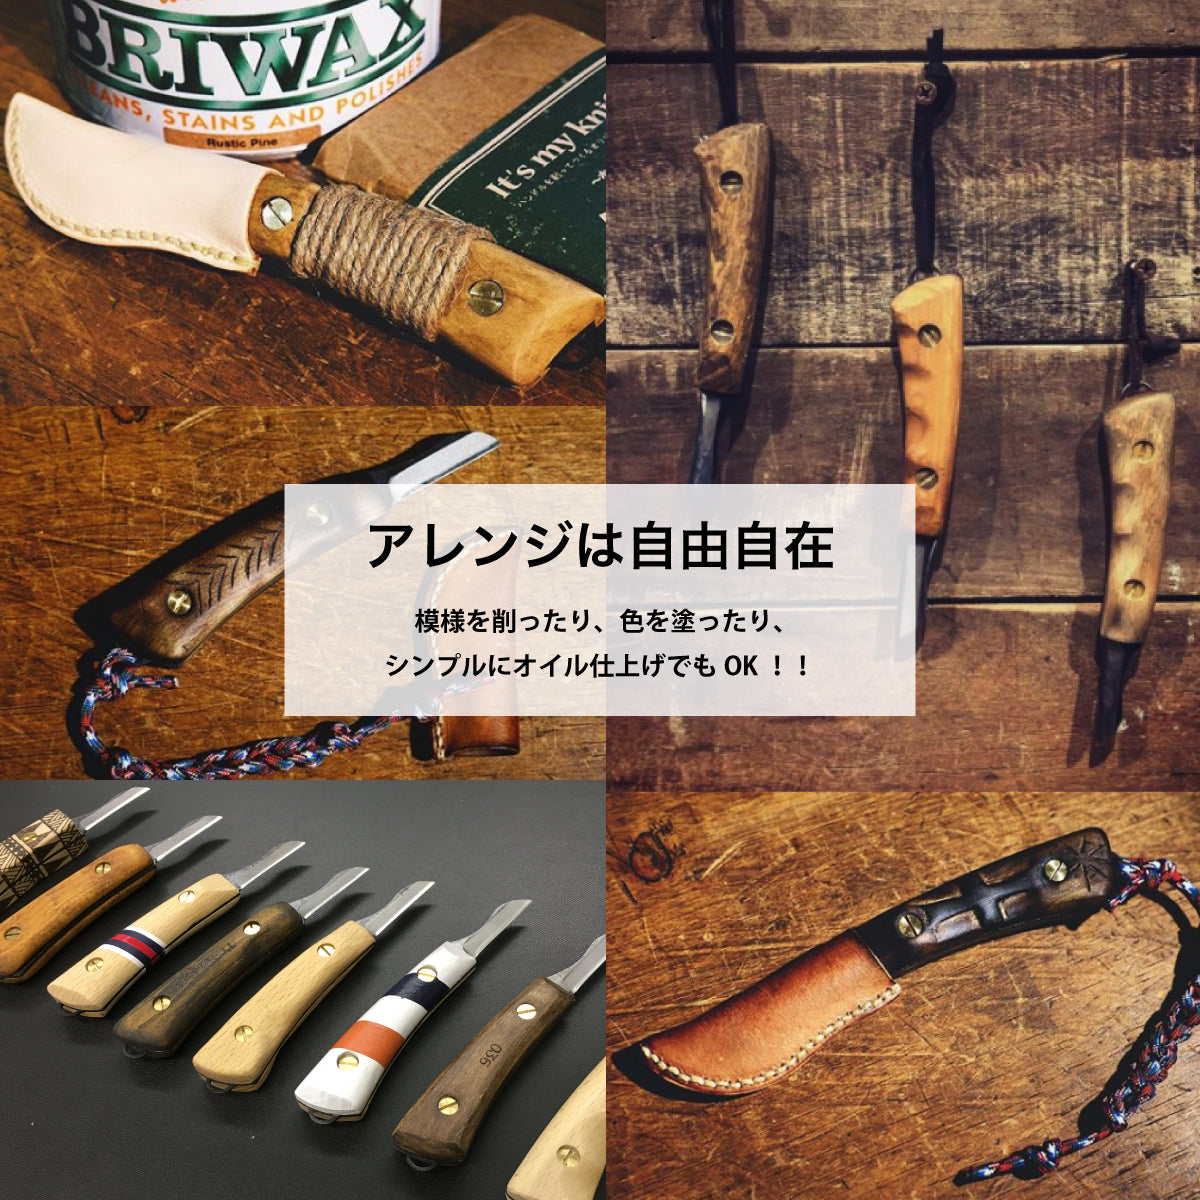 【難易度★★☆】It's my knife Craft Standard (炭素鋼/青紙二号) 4,290円